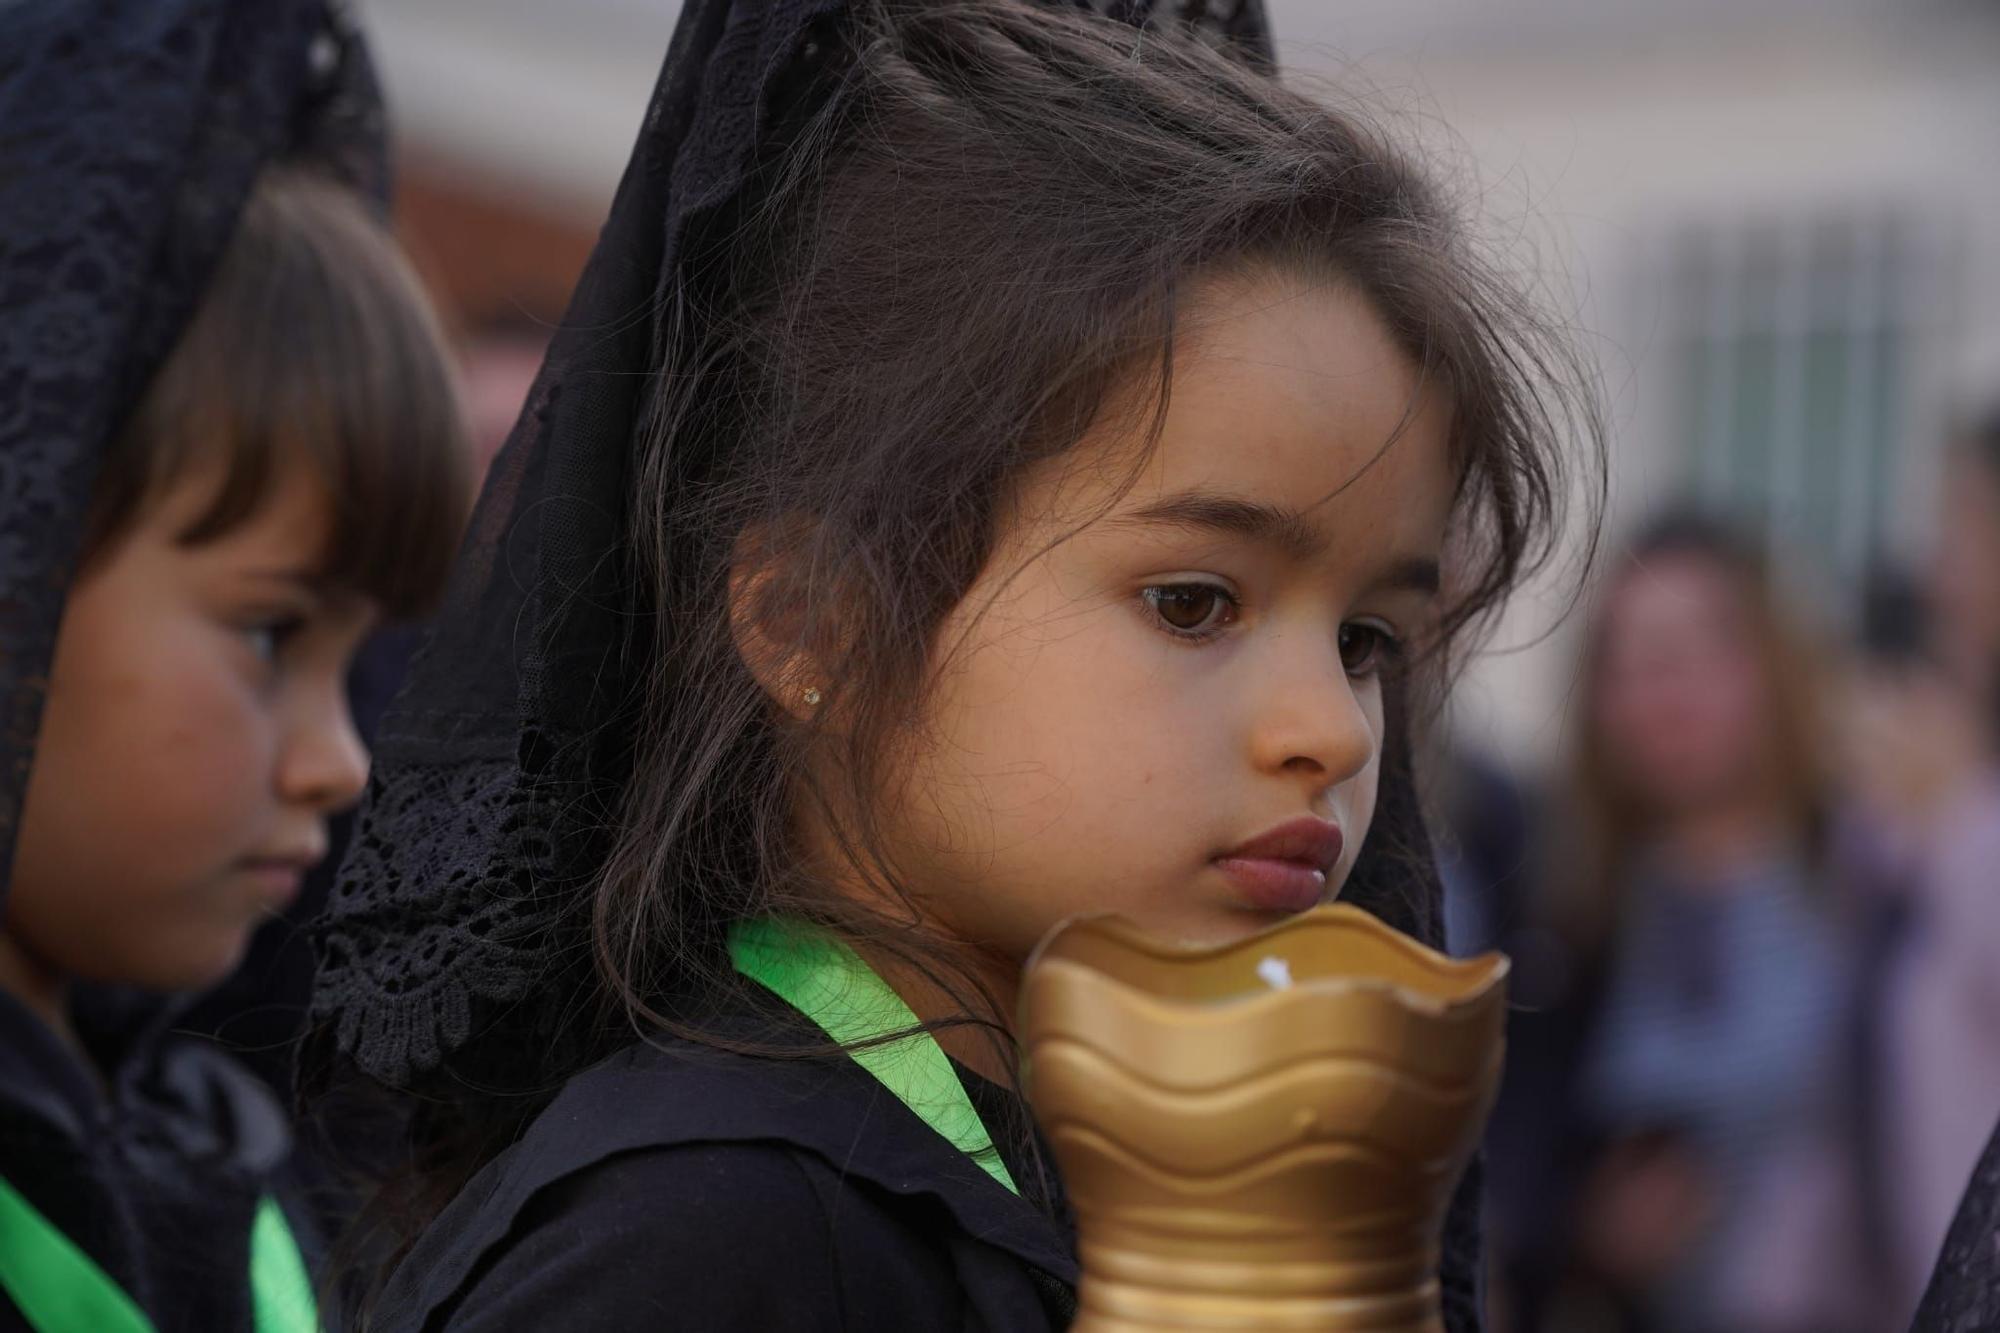 GALERÍA | La Semana Santa de Zamora se adelanta con esta procesión de escolares